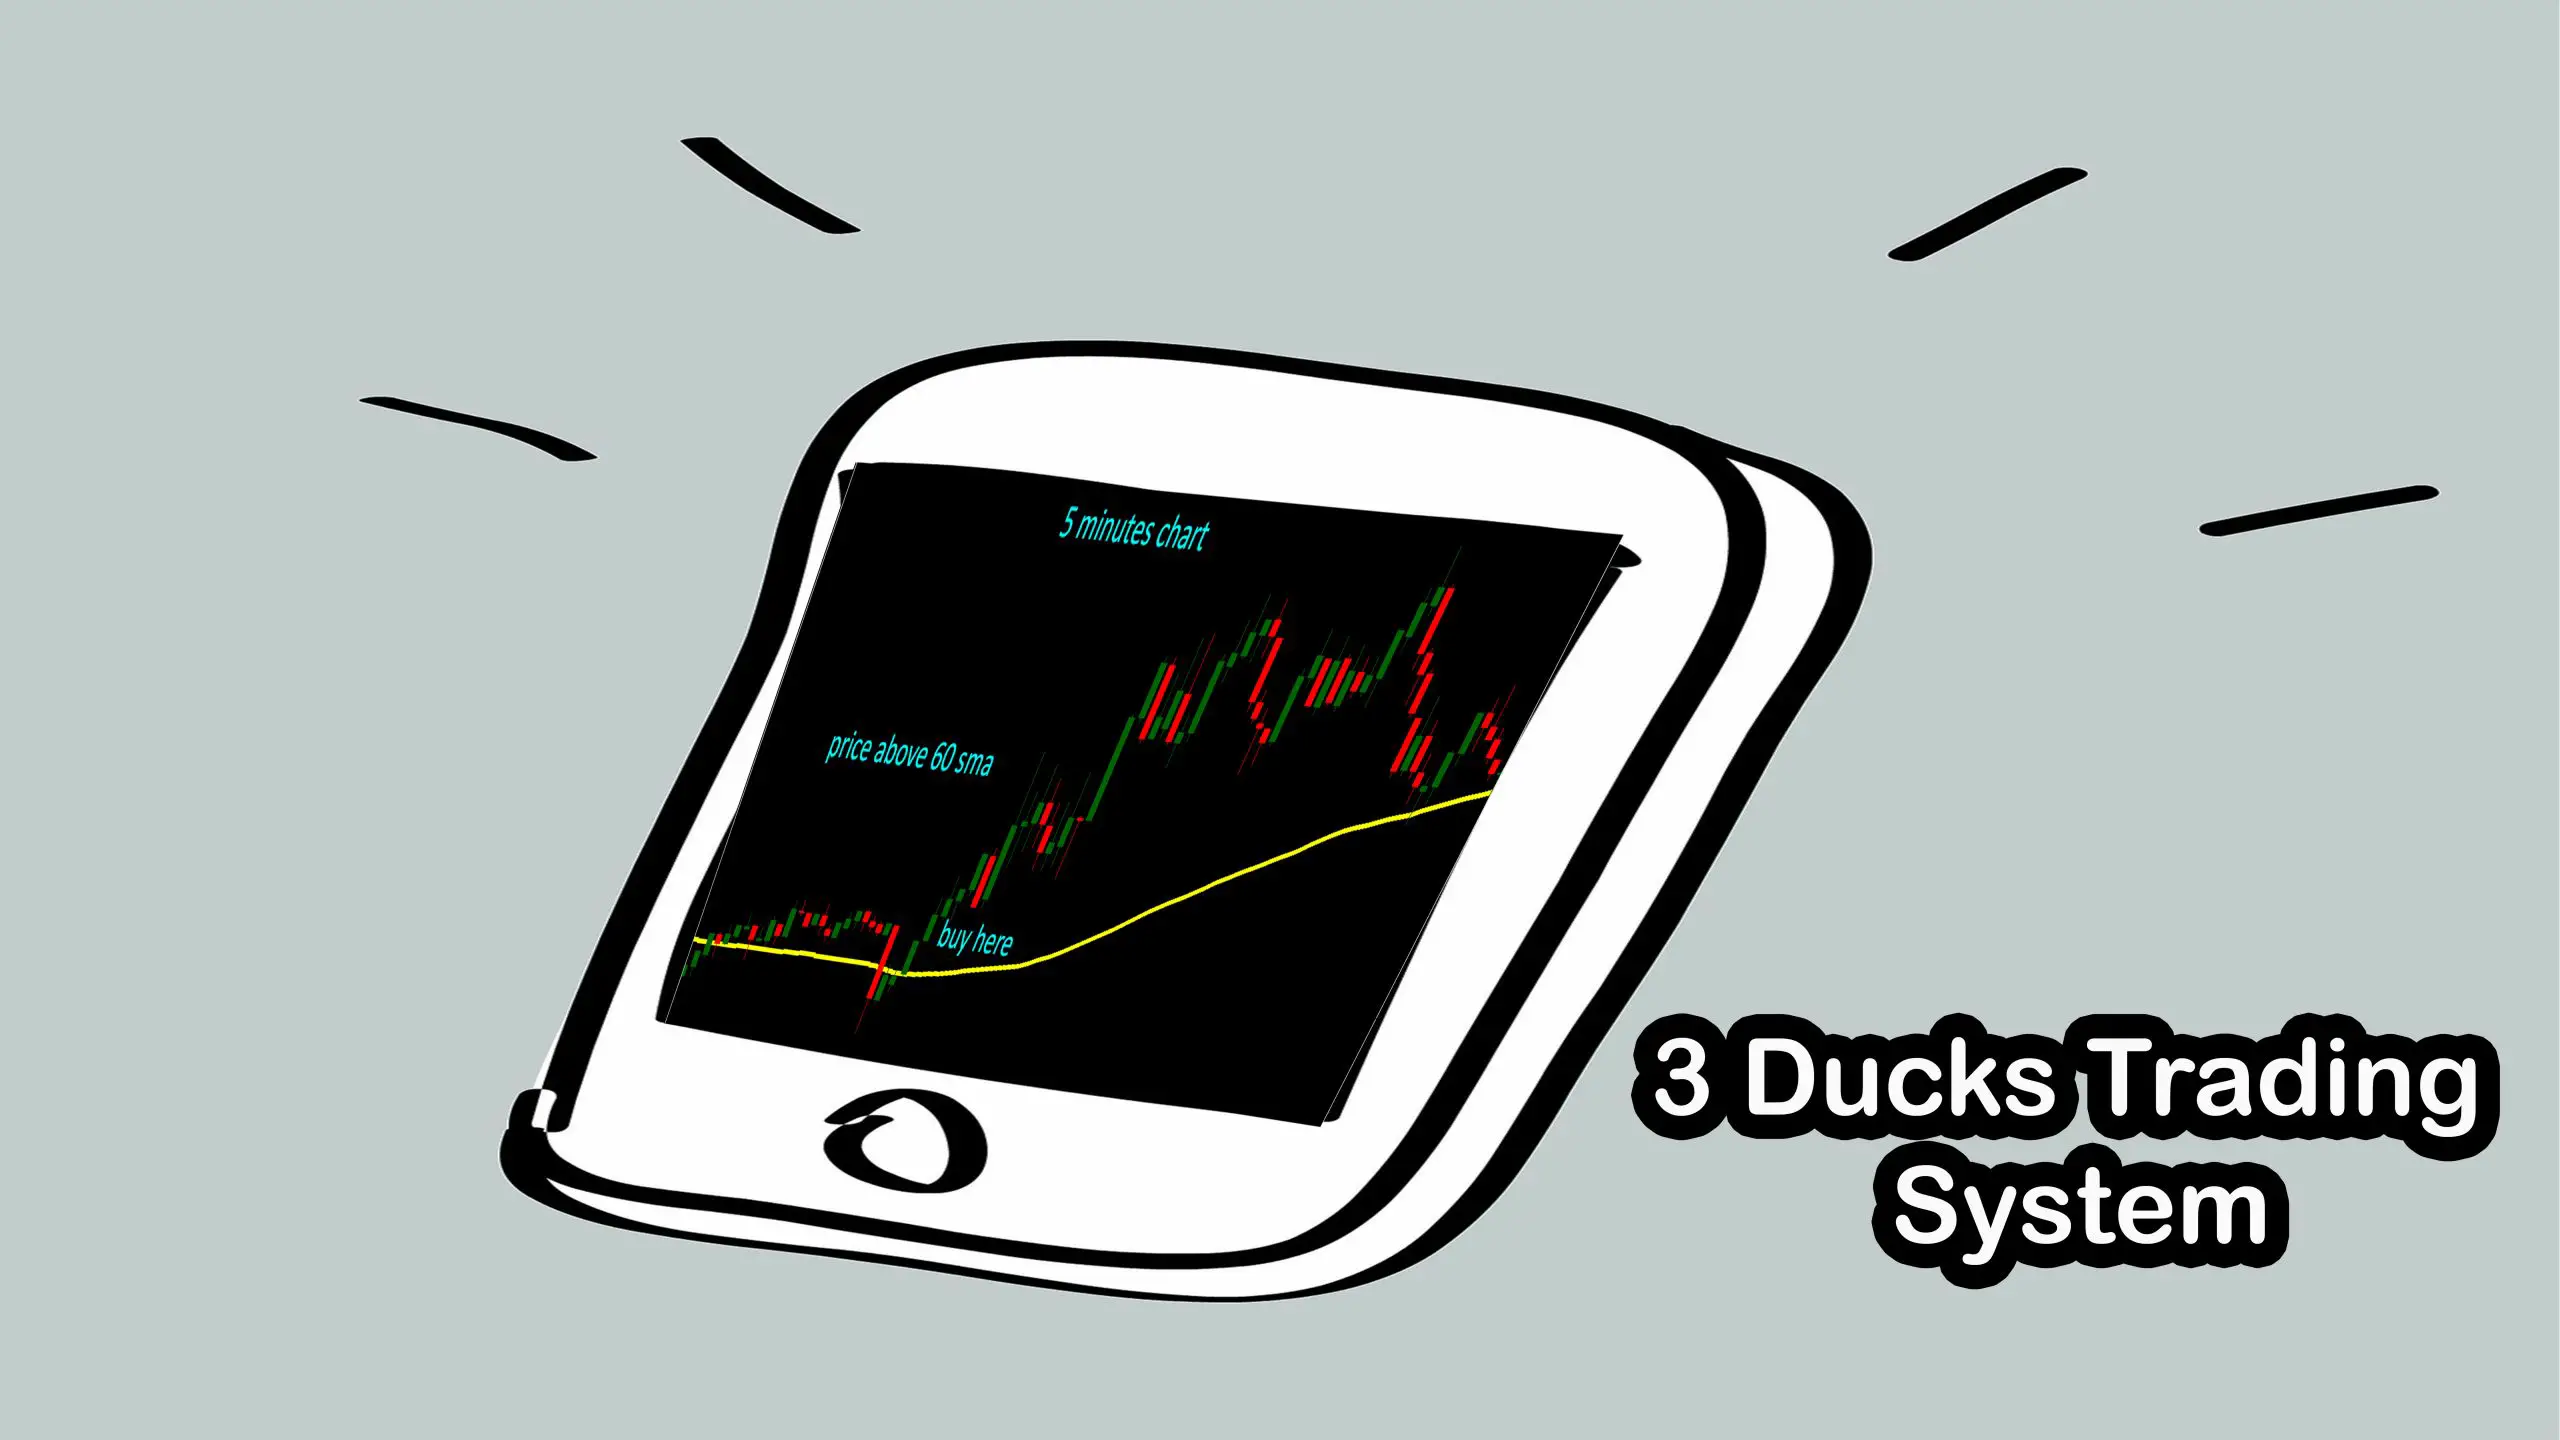 3 ducks trading system